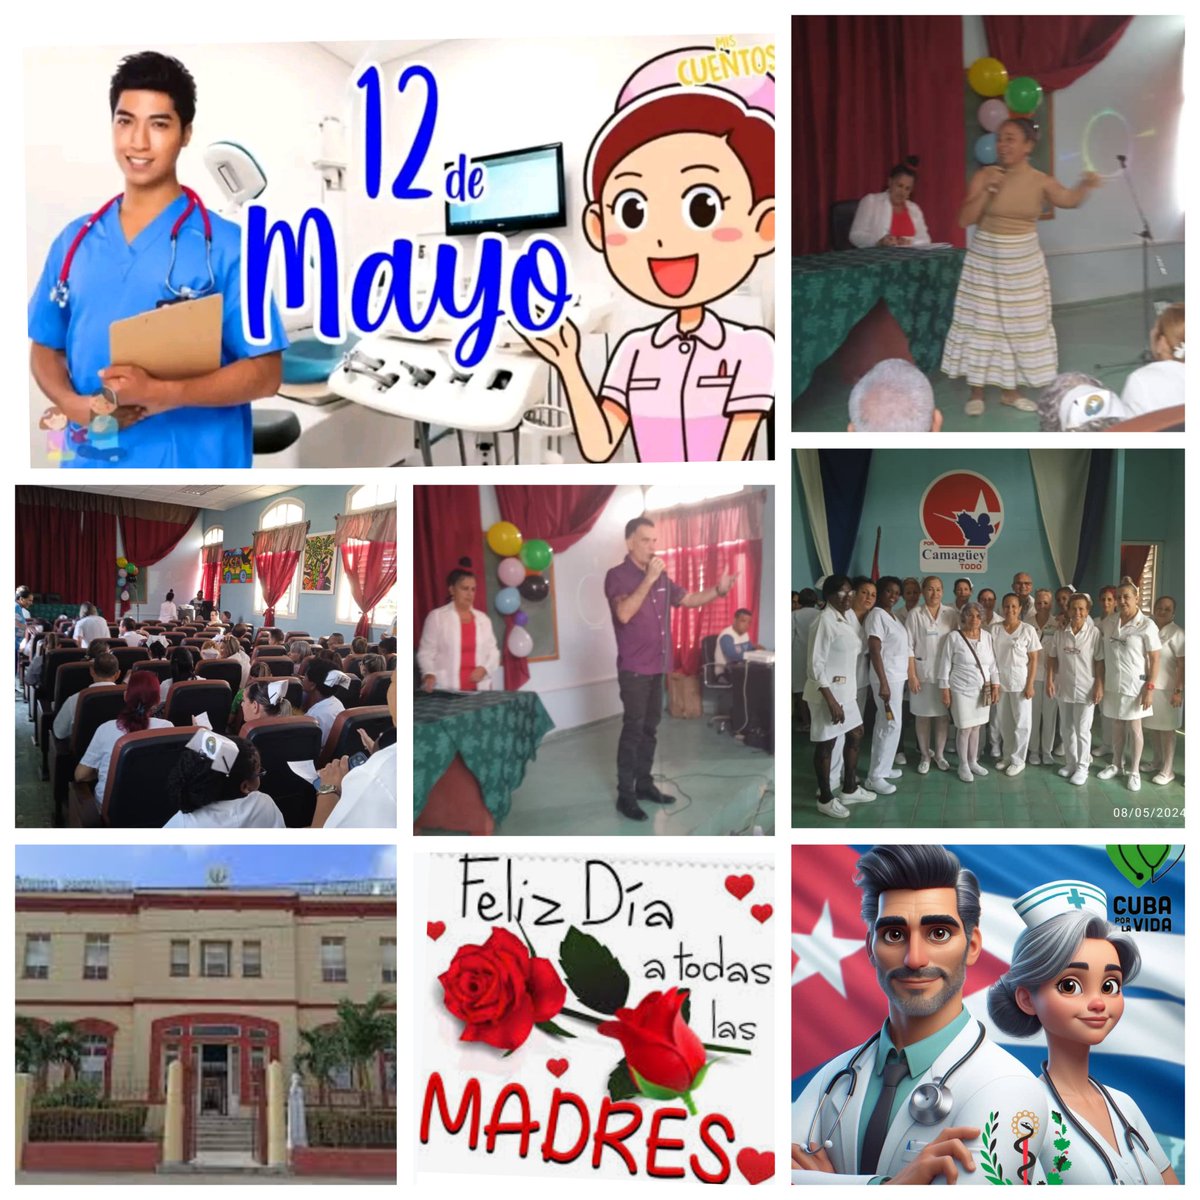 Amor, cubanía y el buen gusto en matutino especial realizado en Hospital Pediátrico Eduardo Agramonte Piña de #Camaguey por la gran coincidencia de celebrarse este próximo domingo el 'Día de las madres' y el 'Día internacional de la enfermería' FELICIDADES !!! #CubaPorLaVida